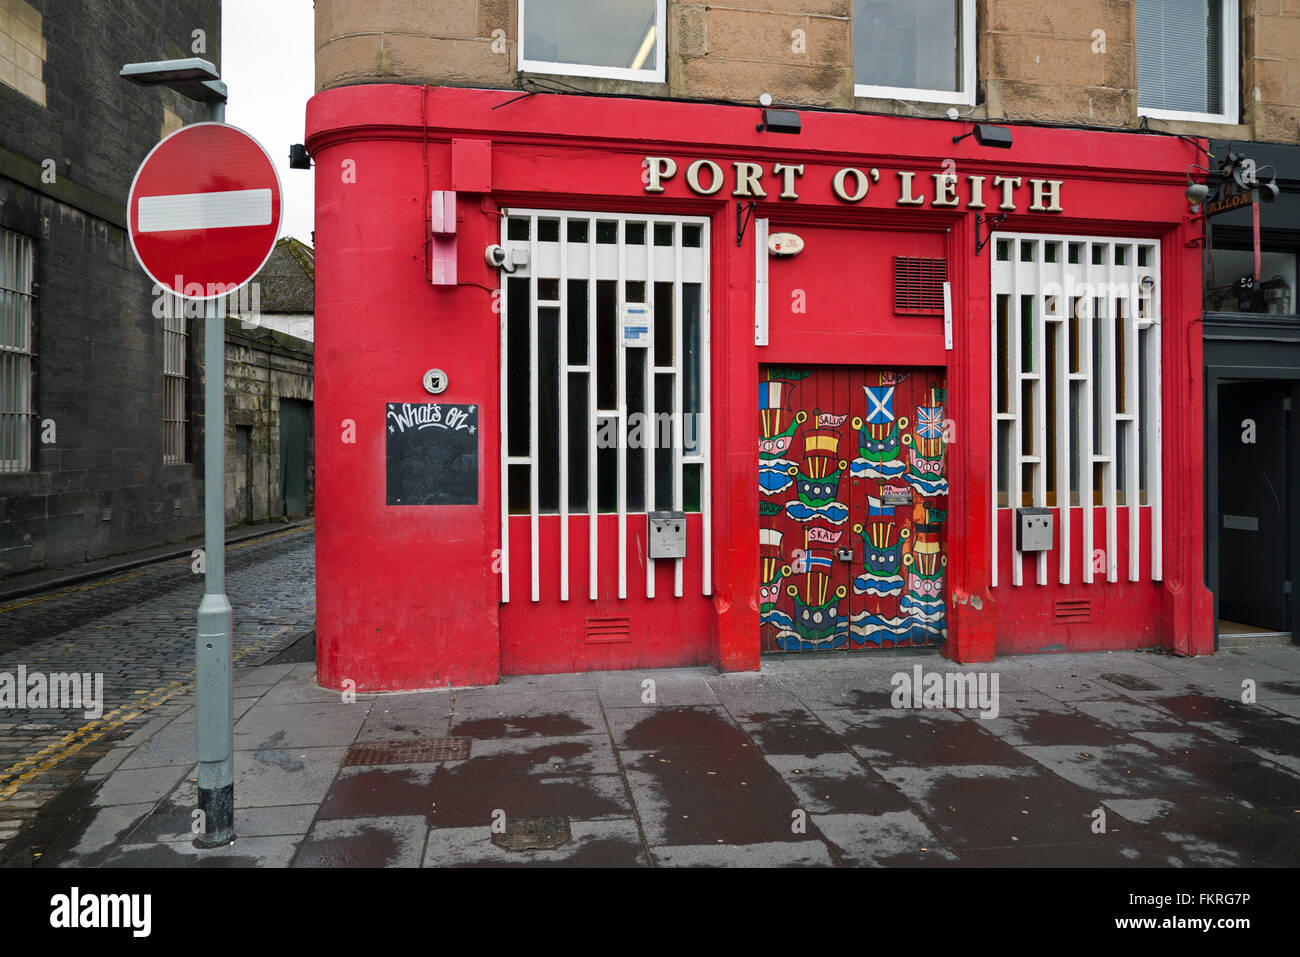 La porta o' Leith Bar in via di costituzione, Leith, Edimburgo, Scozia. Foto Stock